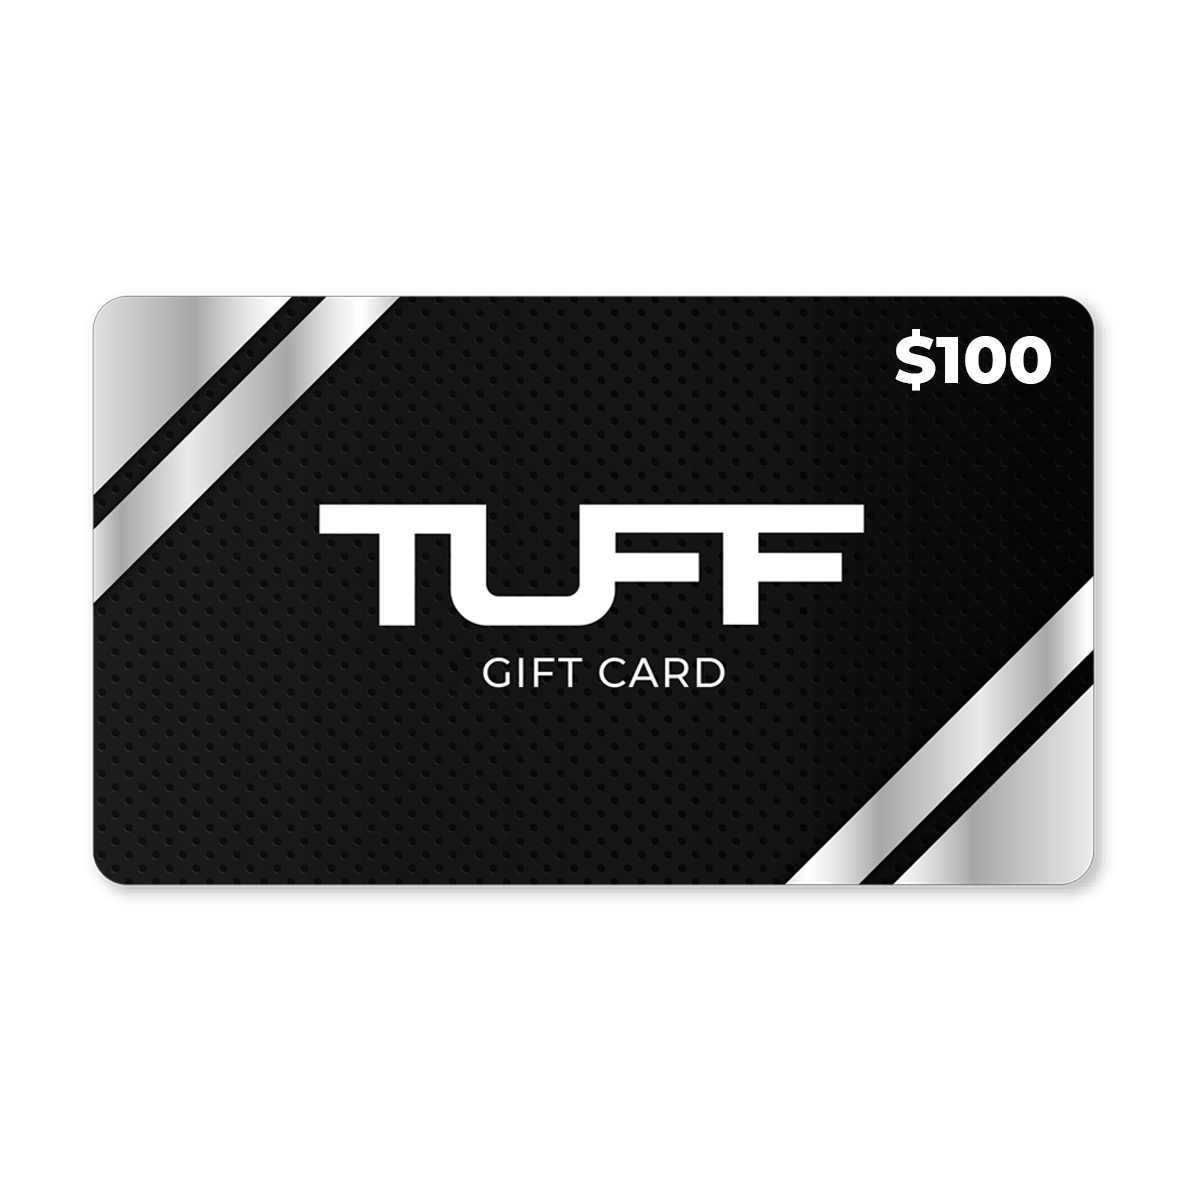 TuffWraps Gift Card $100.00 TUFF Gift Card